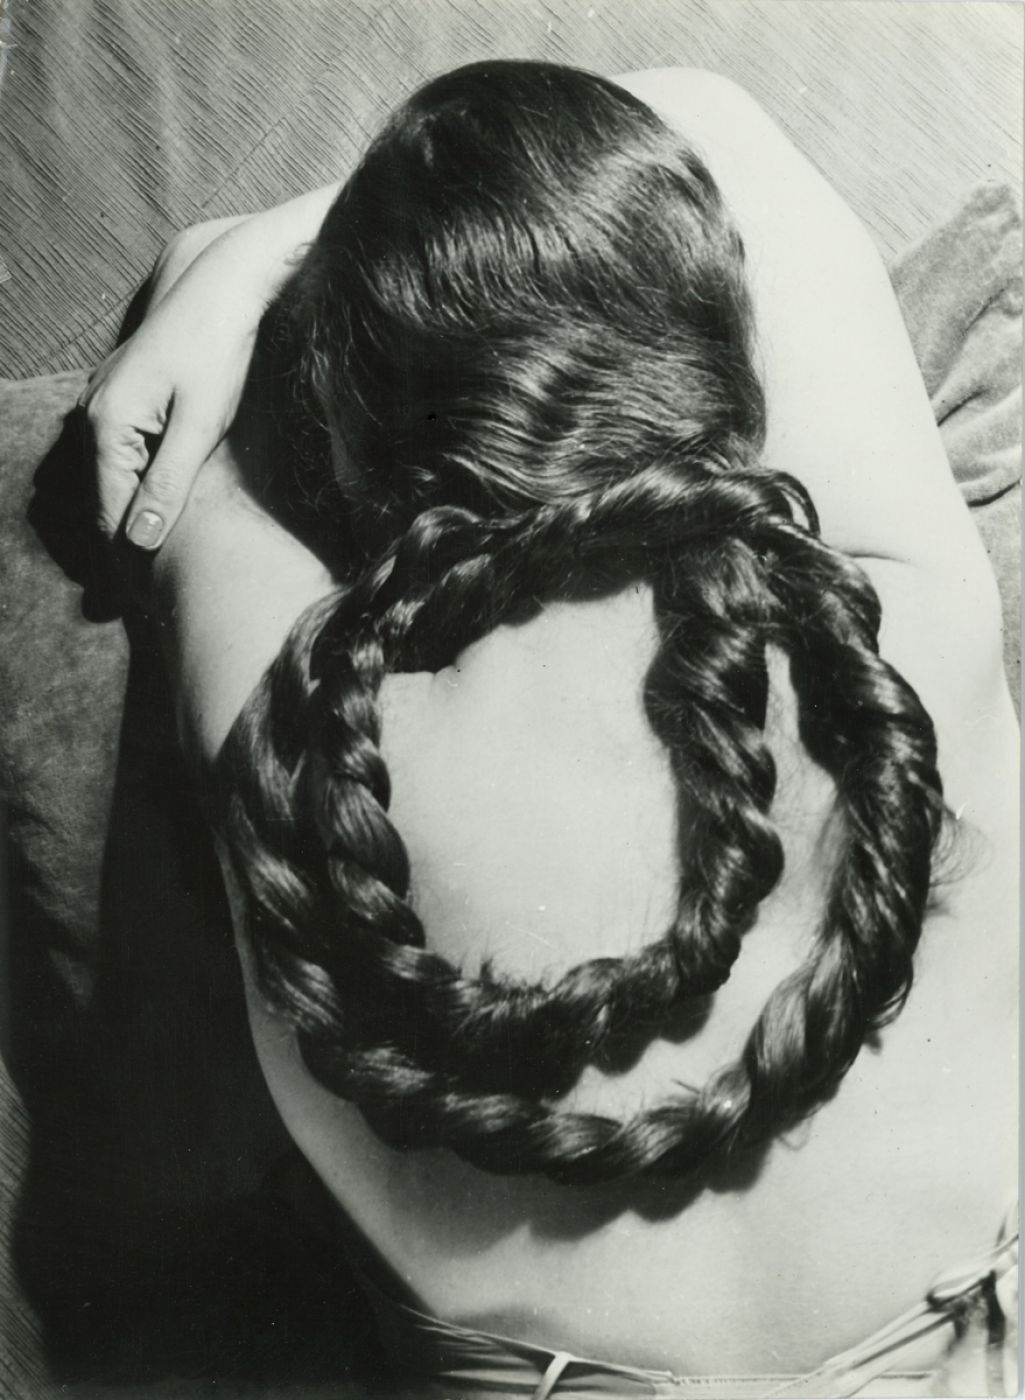 Paul Coze, “Étude de chevelure”, 1950 ca.